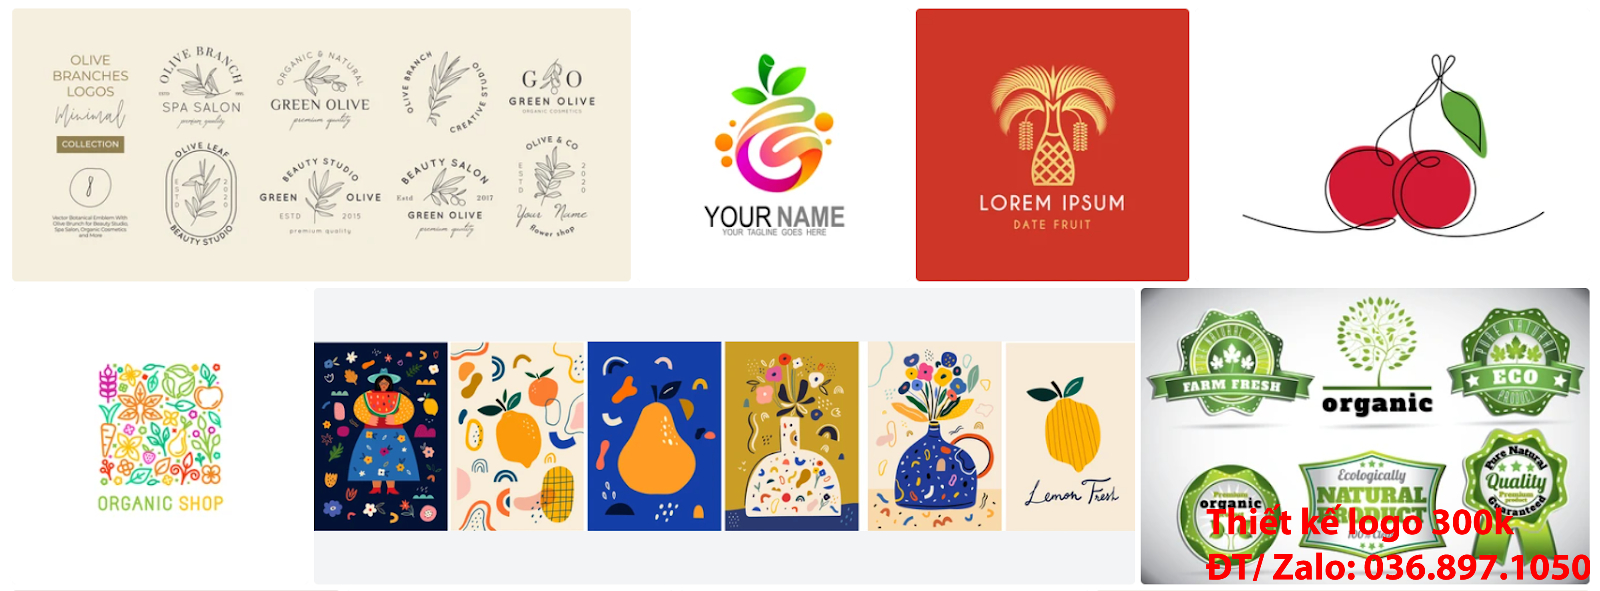 Công ty nhận tạo Ý nghĩa logo trái cây độc đáo giá rẻ 300k đẹp chất lượng